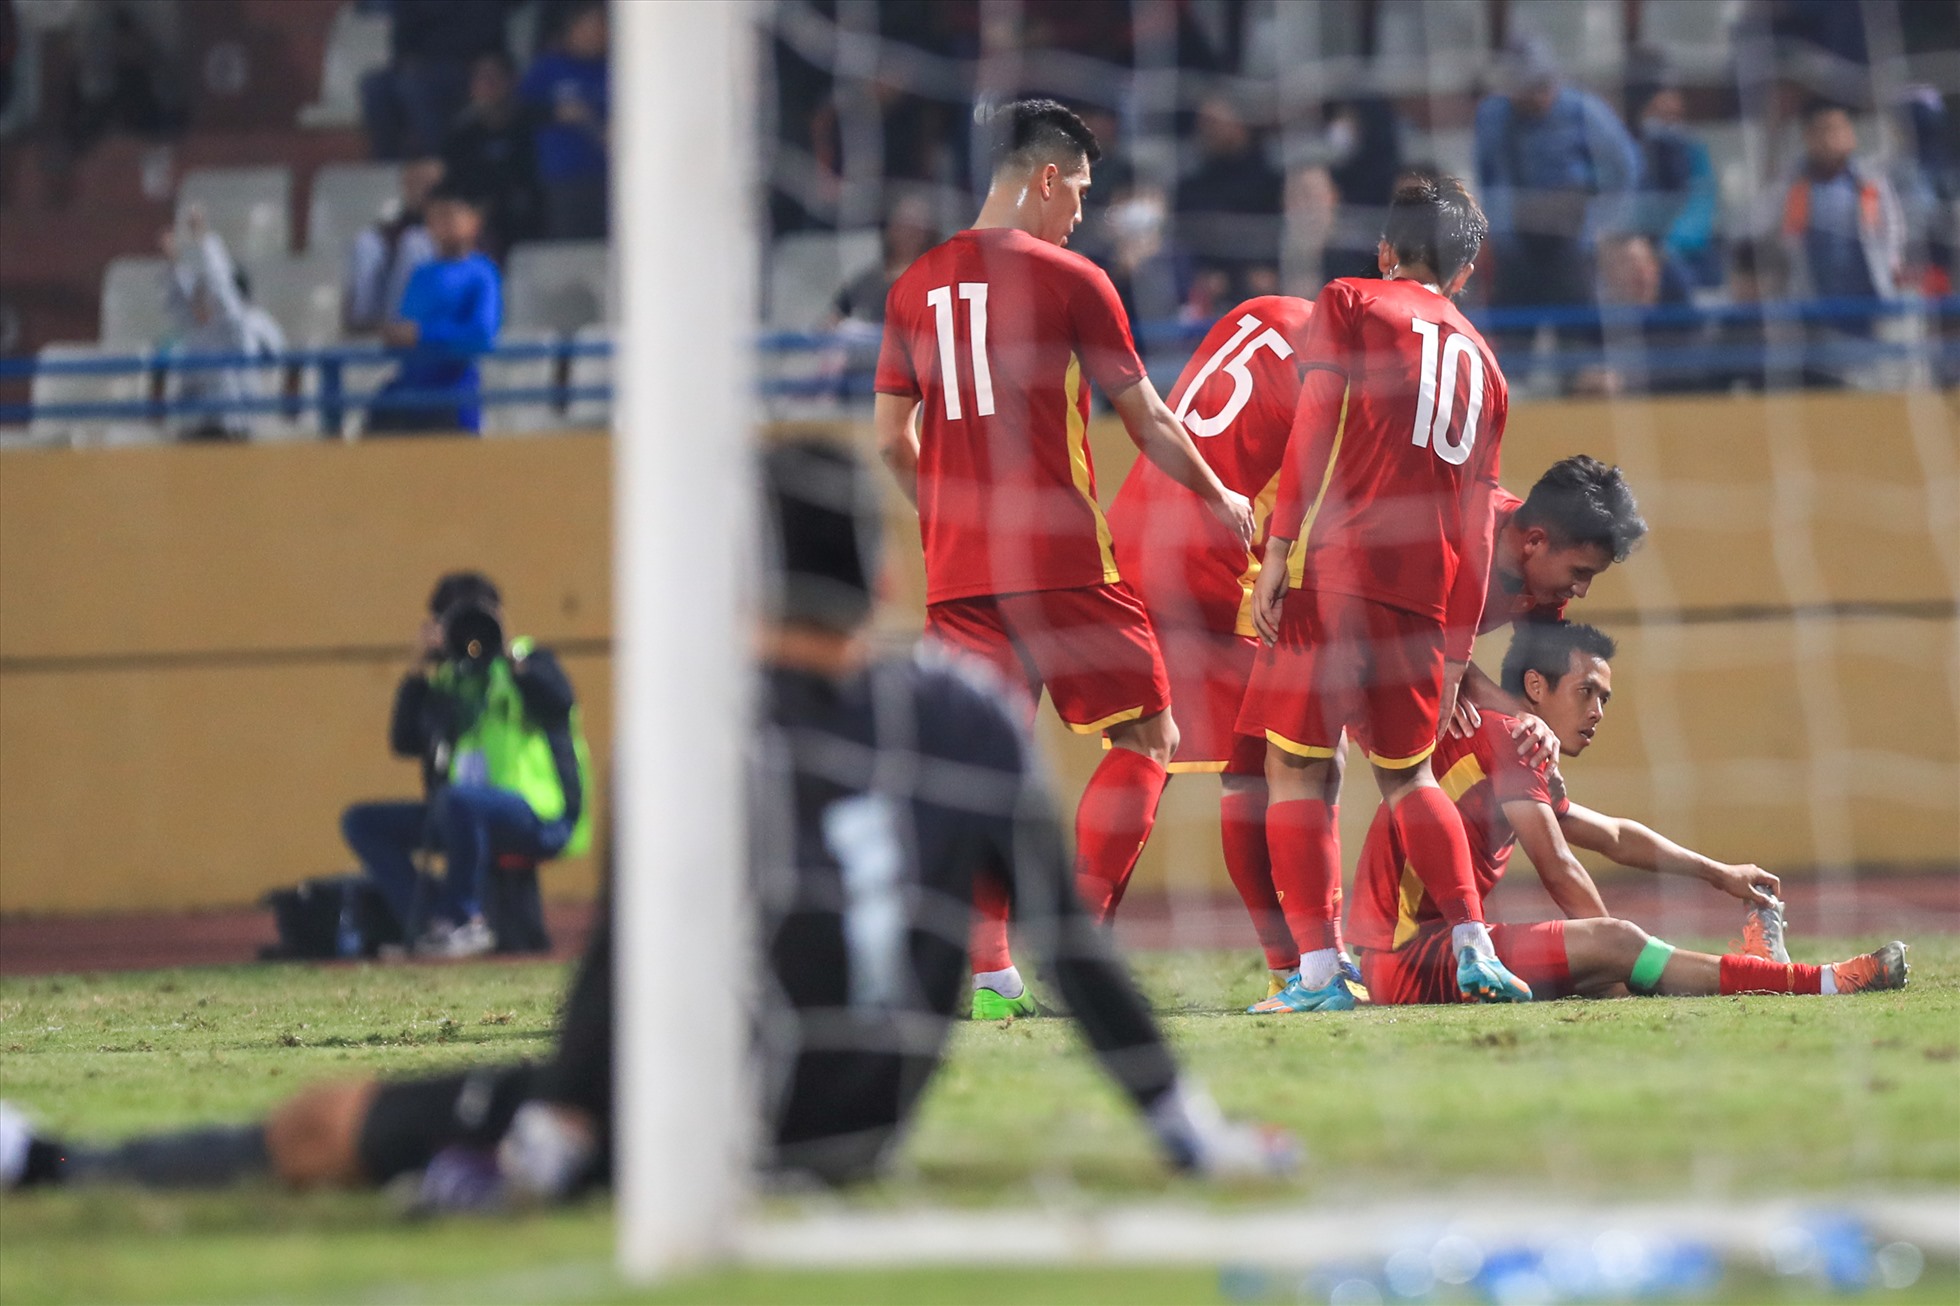 Kết thúc trận đấu, đội tuyển Việt Nam giành chiến thắng 1-0 trước Philippines. Đây cũng là trận đấu cả hai đội chơi chủ động và đầy toan tính.